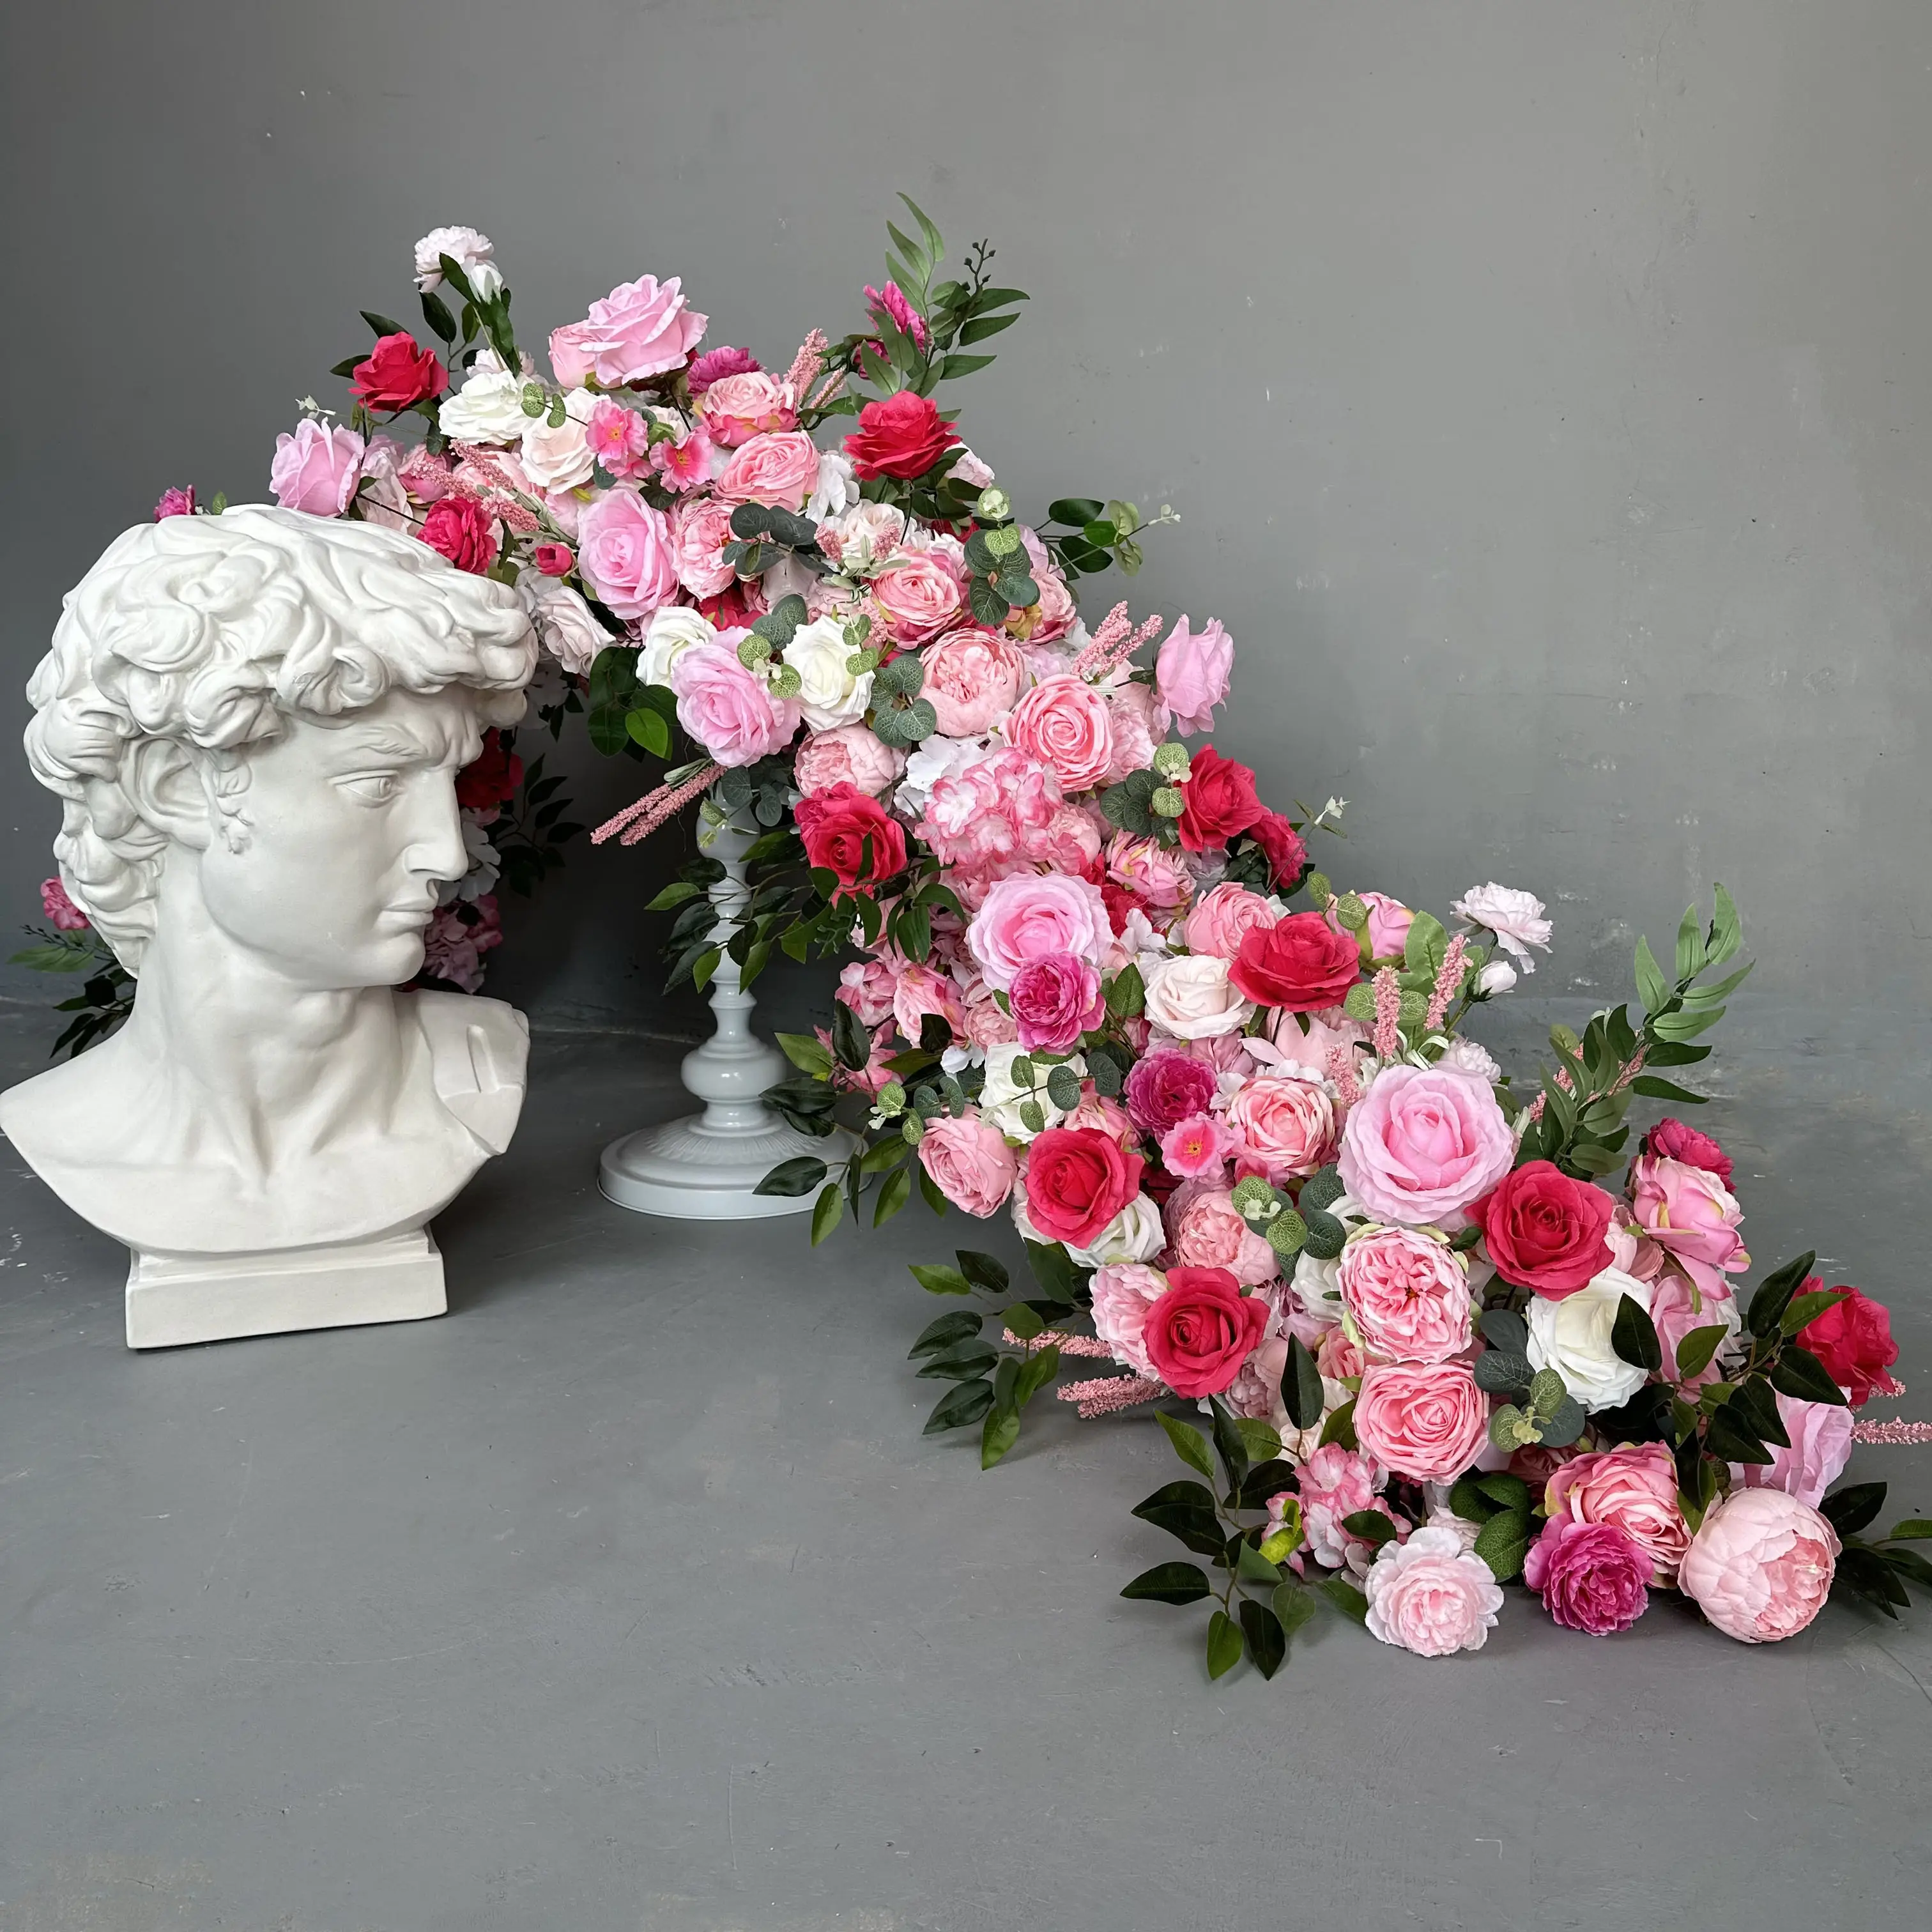 A-FR009 gros mariage artificiel 3d fleur coureur rangée fleur chemin de table soie rose fleur allée coureur décoration